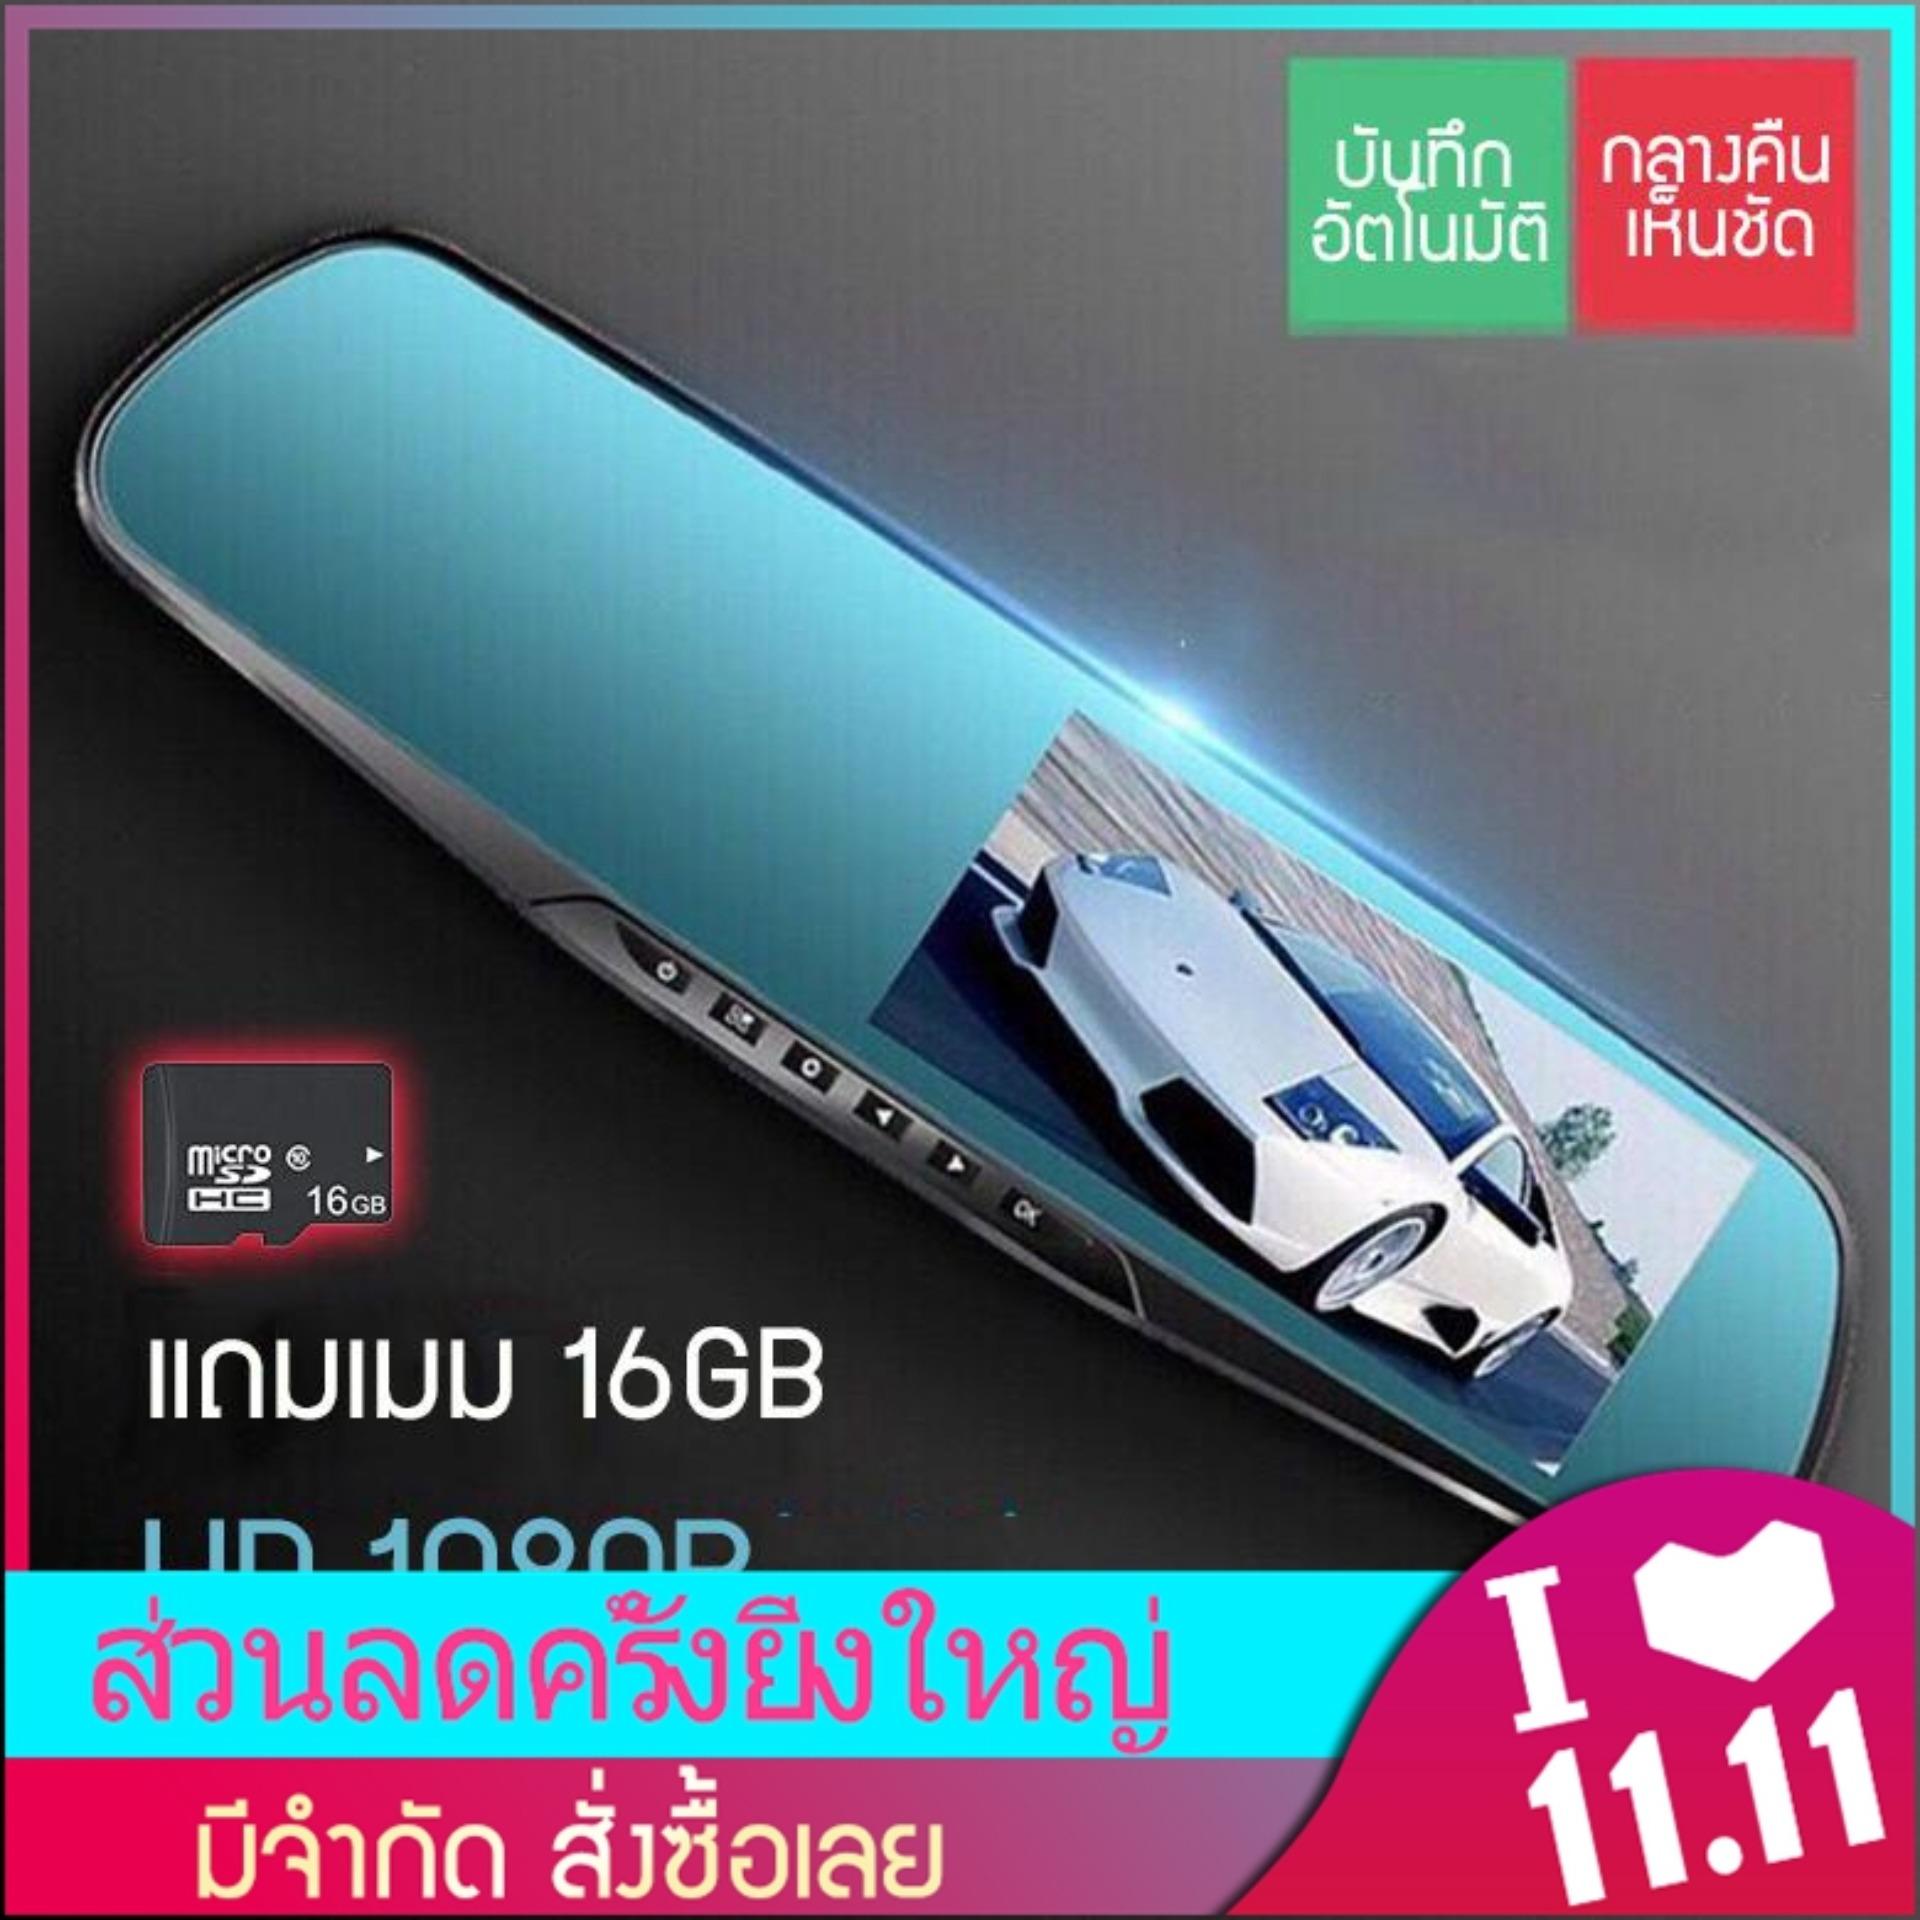 กล้องติดกระจกรถยนต์ หน้า-หลัง Car DVR Camera กล้องติดรถ กระจกมีกล้องในตัว กล้องมองหลัง กล้องติดรถยนต์ ชัดHD 1080P จอ 4.3 นิ้ว แถมฟรีเมม 16GB เมนูภาษาไทย  Fashion Asia Official Store